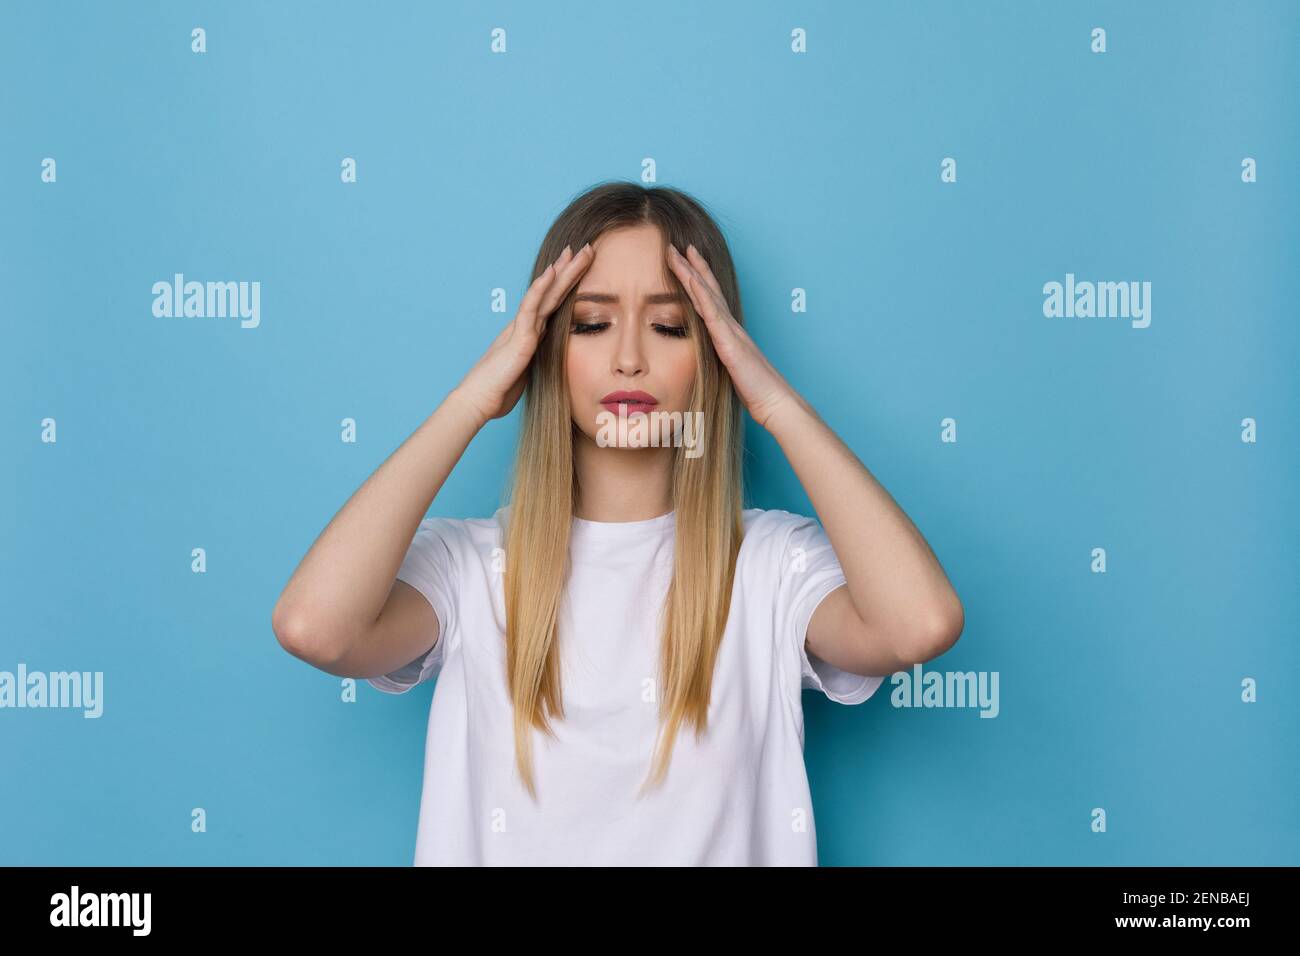 Junge Frau im weißen Hemd hat Kopfschmerzen und hält ihren Kopf in den Händen. Studio-Aufnahme auf blauem Hintergrund. Stockfoto